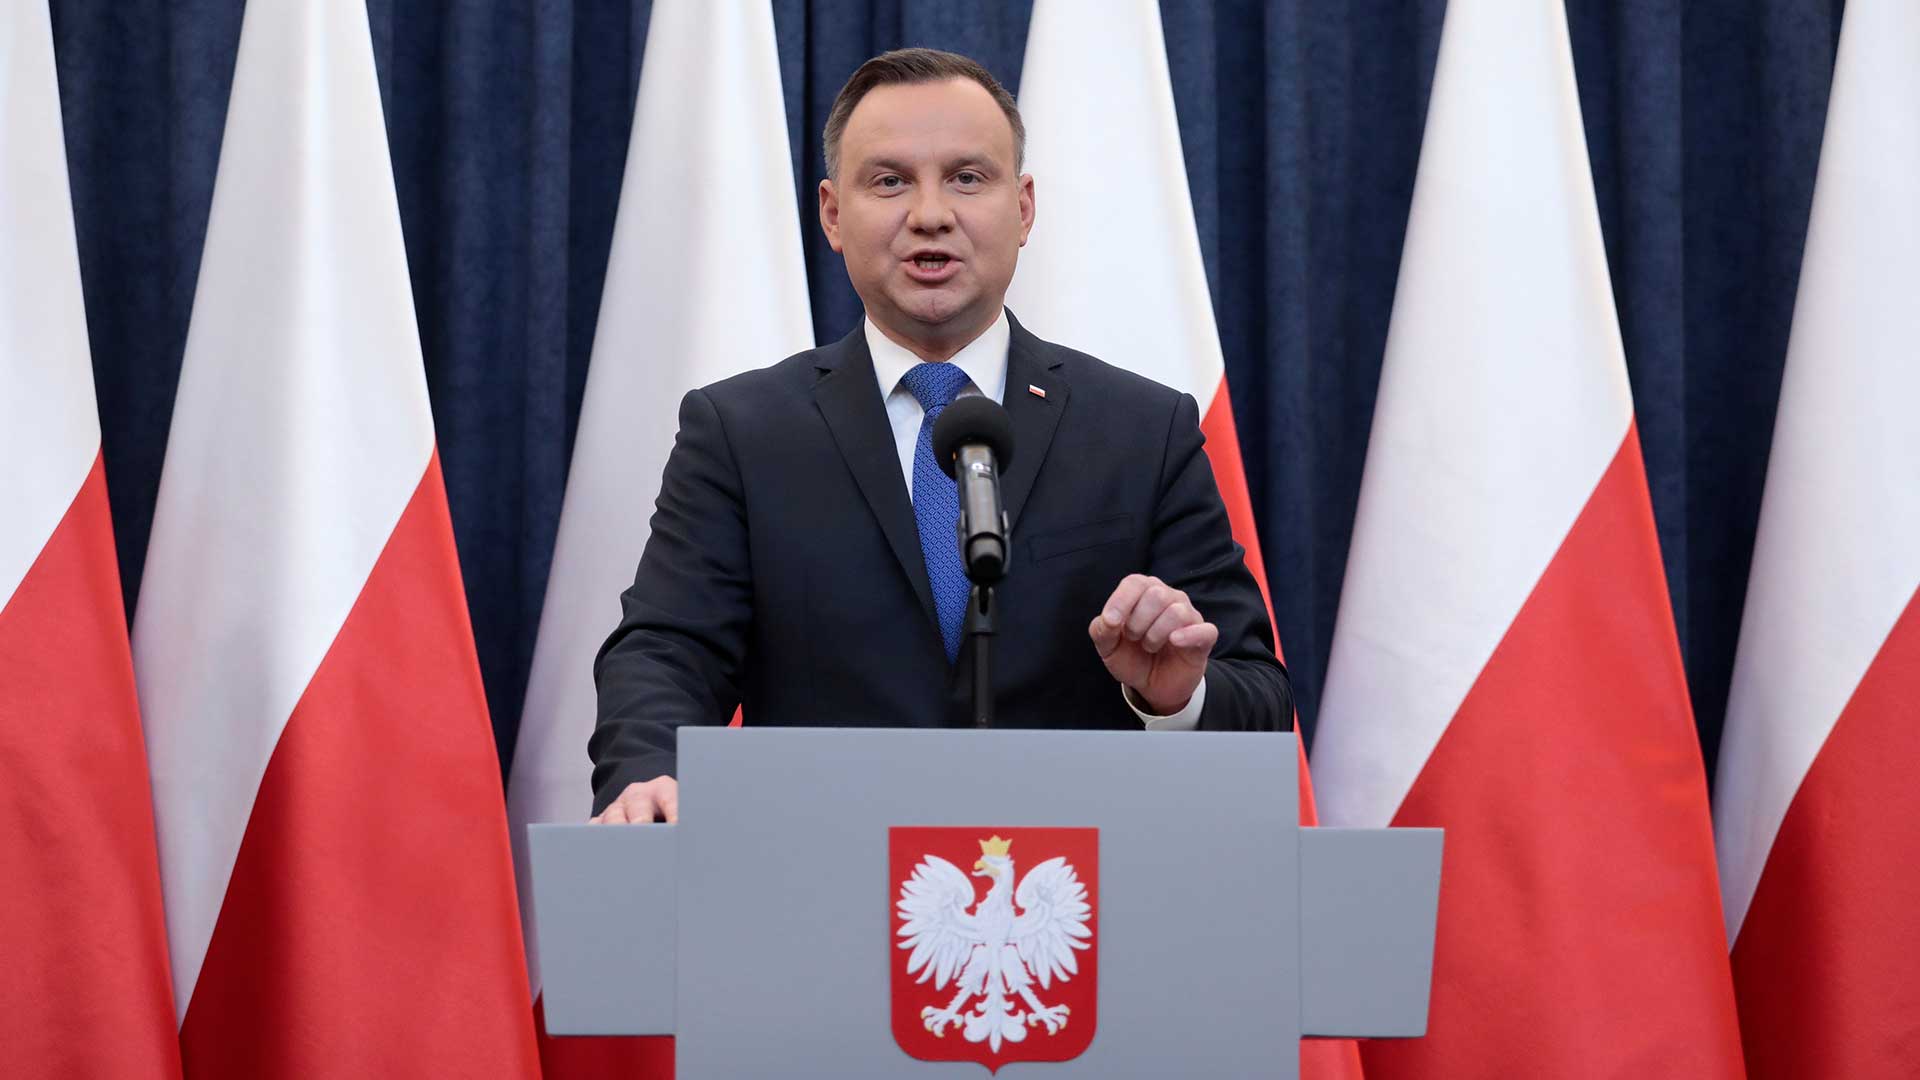 El presidente de Polonia firma la polémica ley sobre el Holocausto